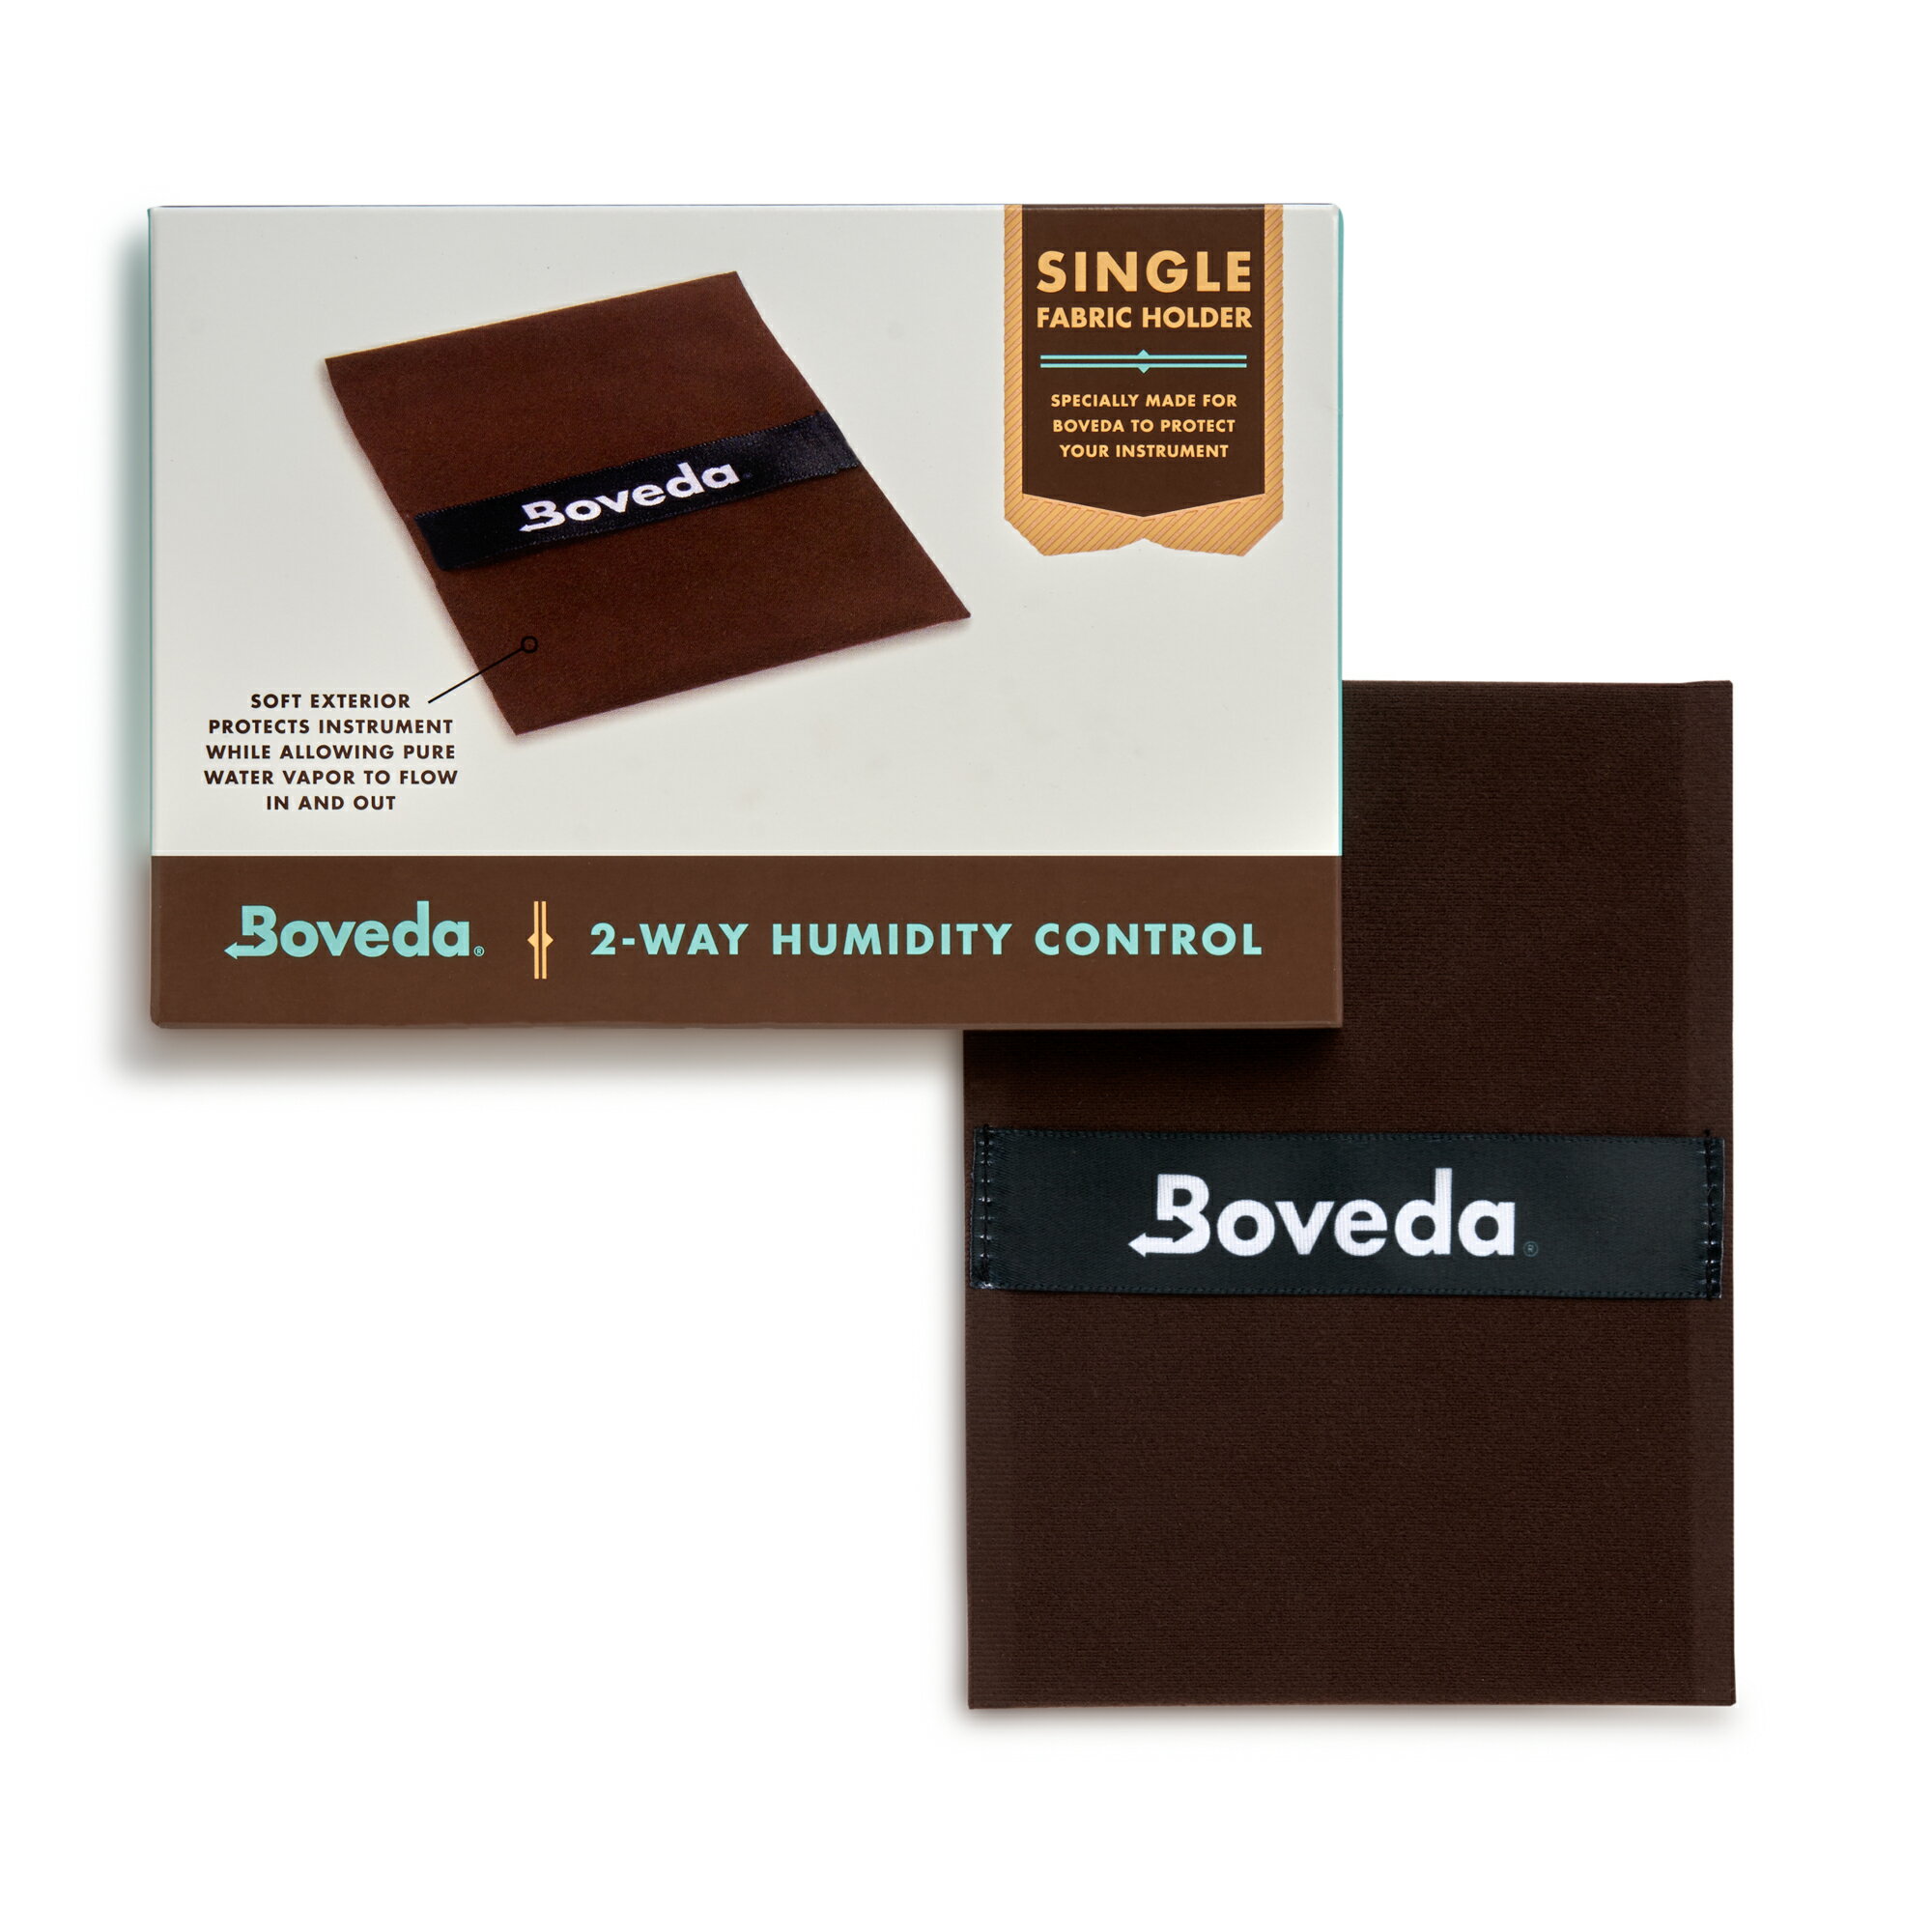 【ボベダ公式】Boveda 楽器用 ダブル-スリーブ ファブリック ホルダー 49% RH 1枚 湿度 コントロール 保護 大型 木製楽器 クラッキング ワーピング